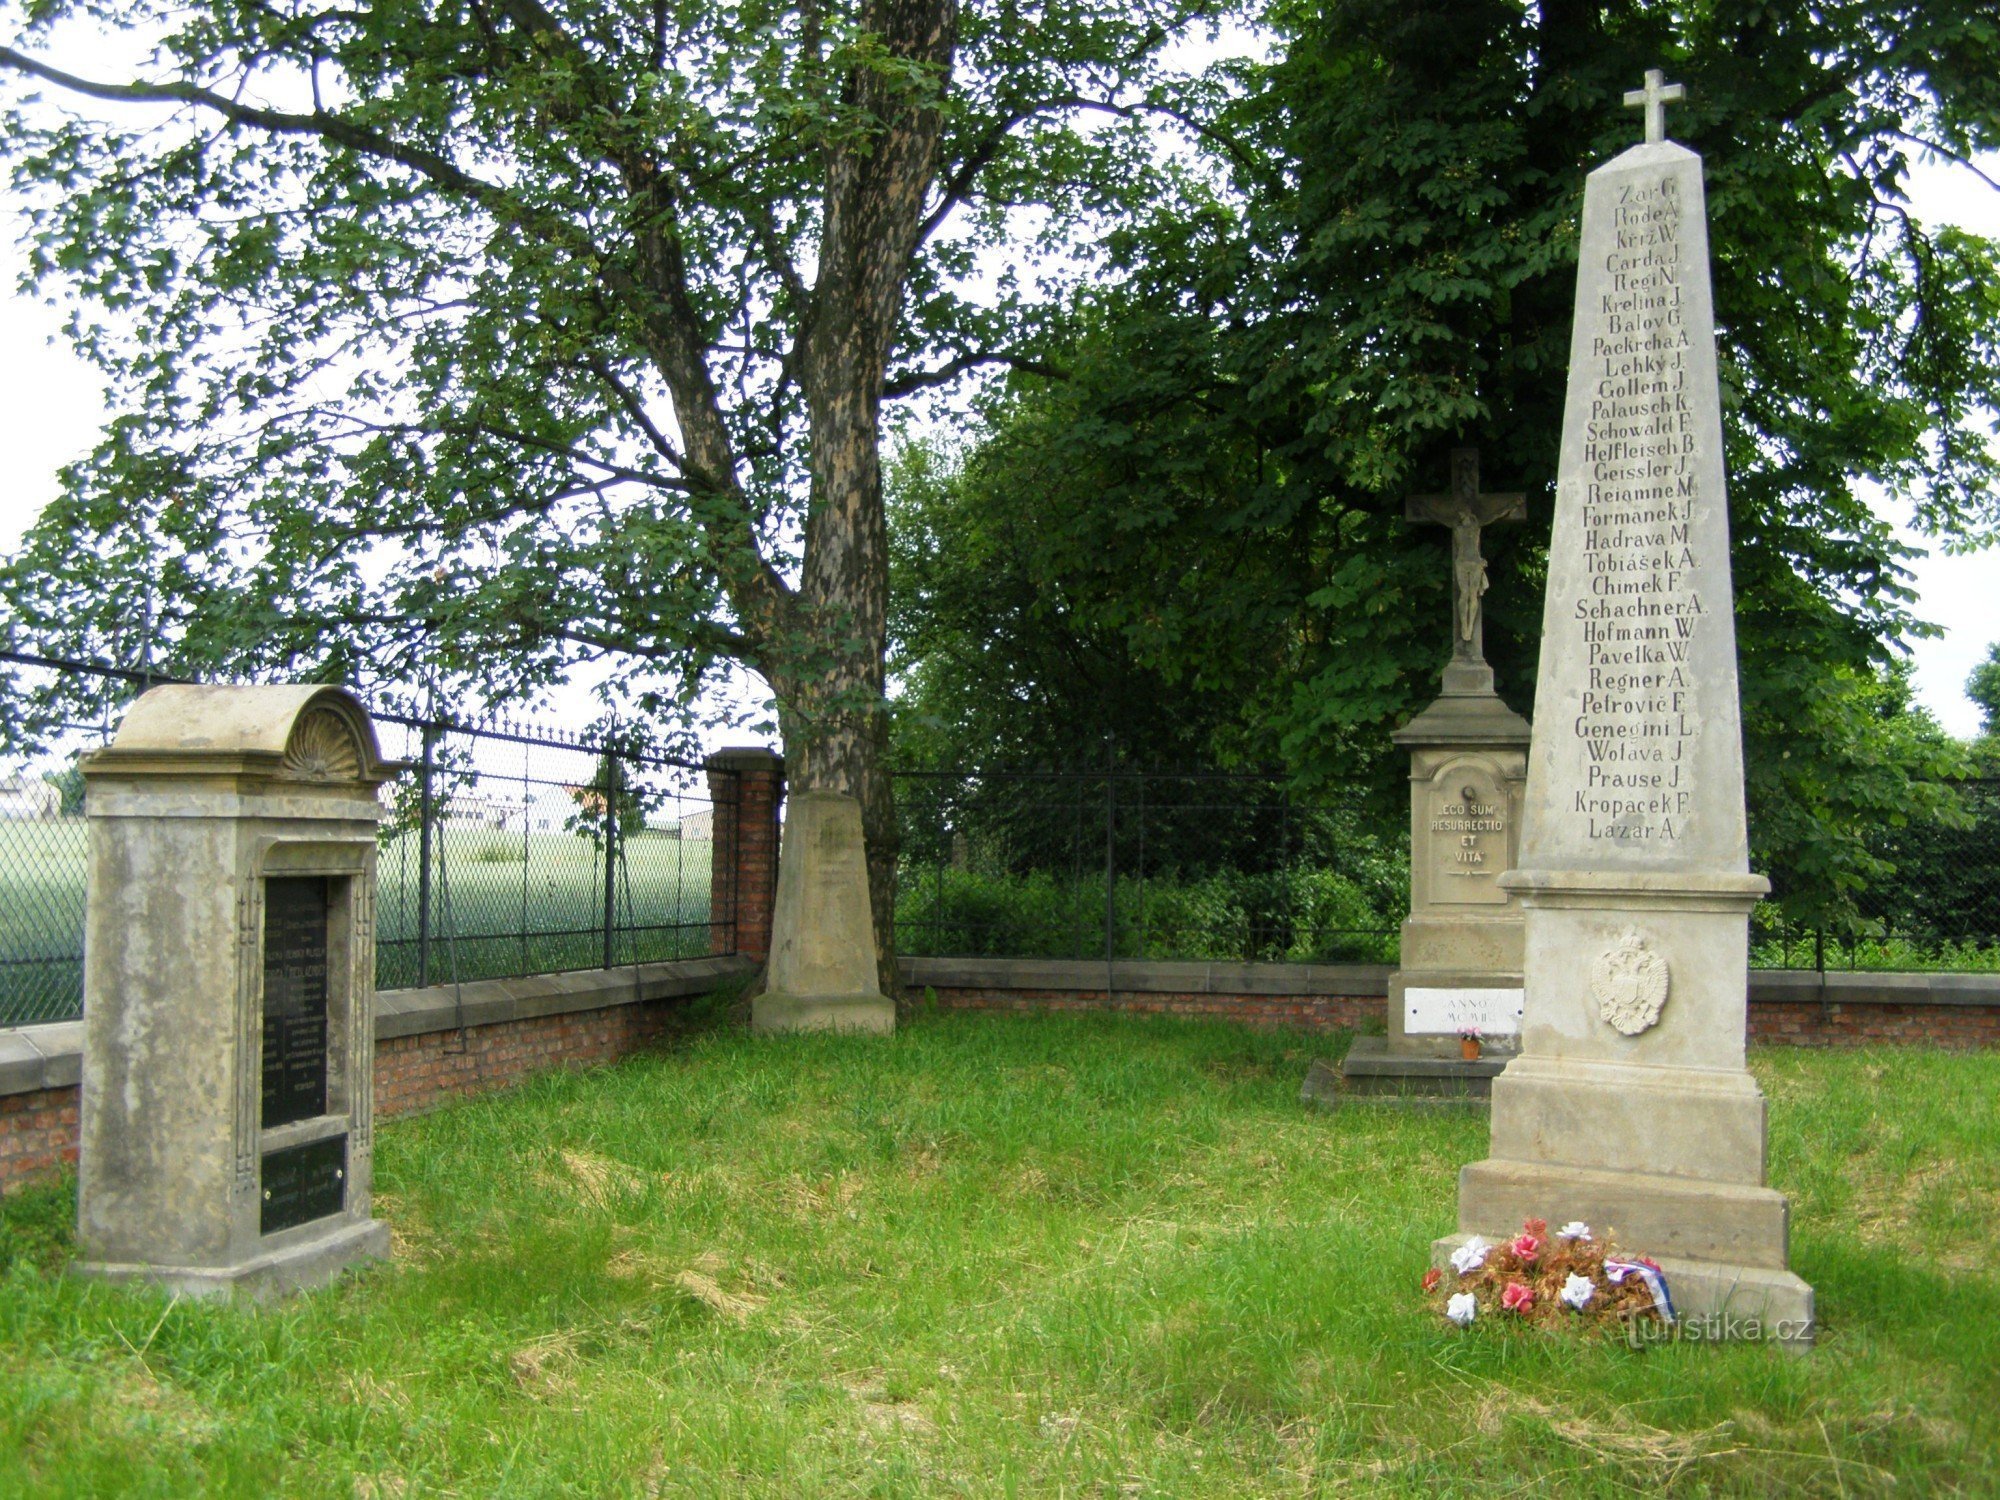 Nový Bydžov - cementerio militar de la batalla de 1866